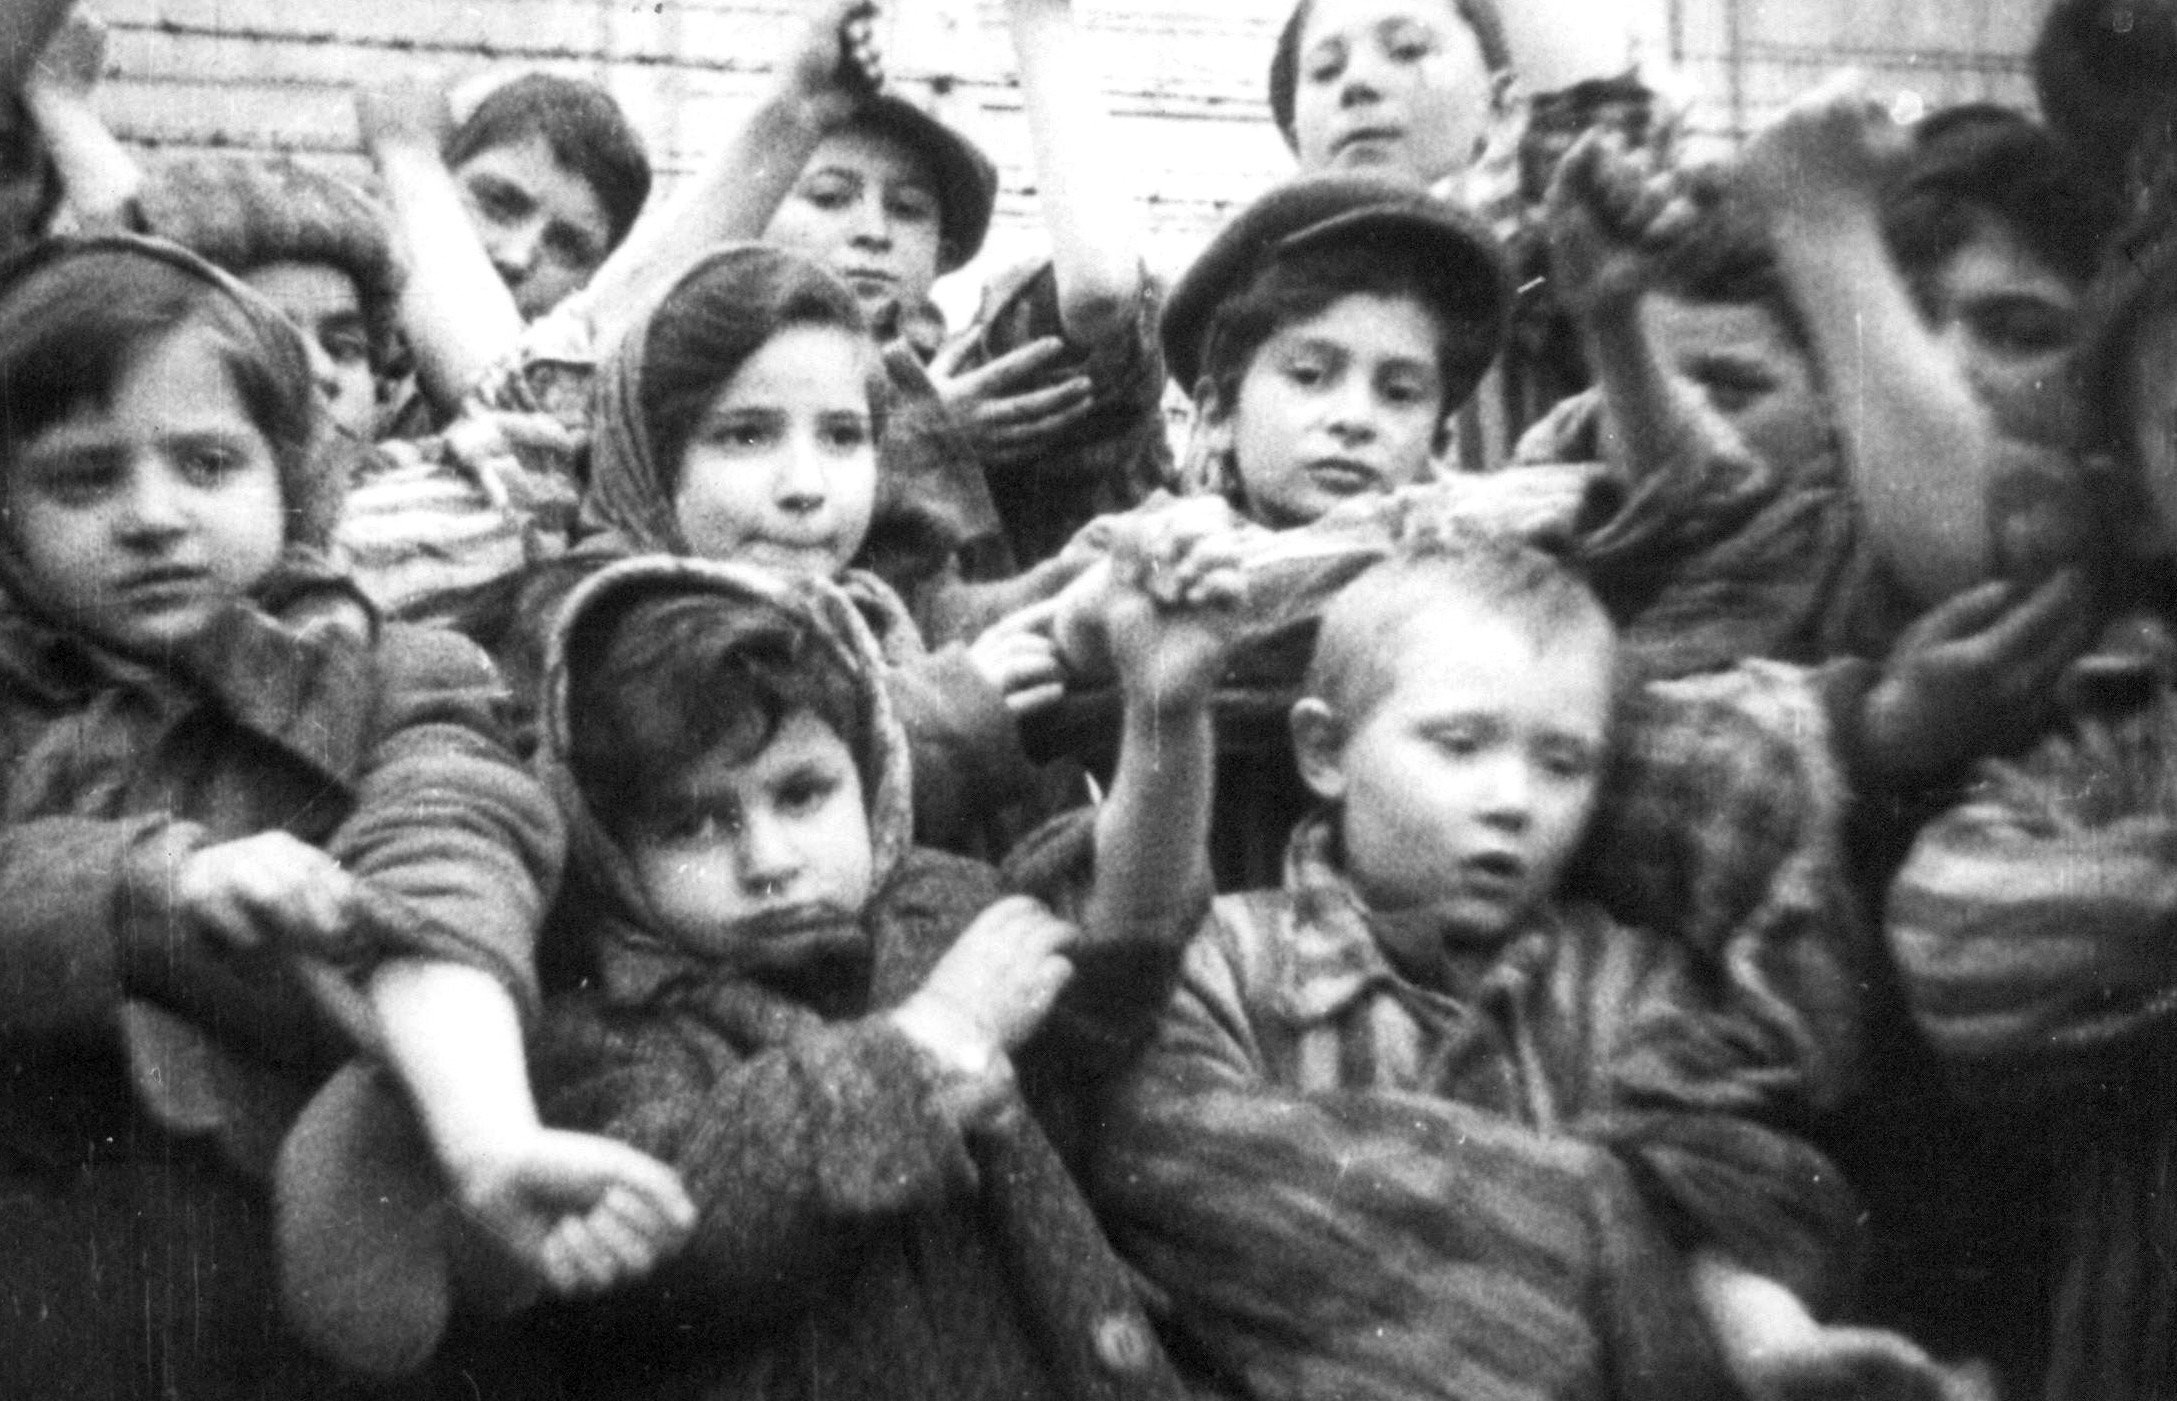 http://waralbum.ru/wp-content/uploads/2012/02/Auschwitz_children_1945.jpg